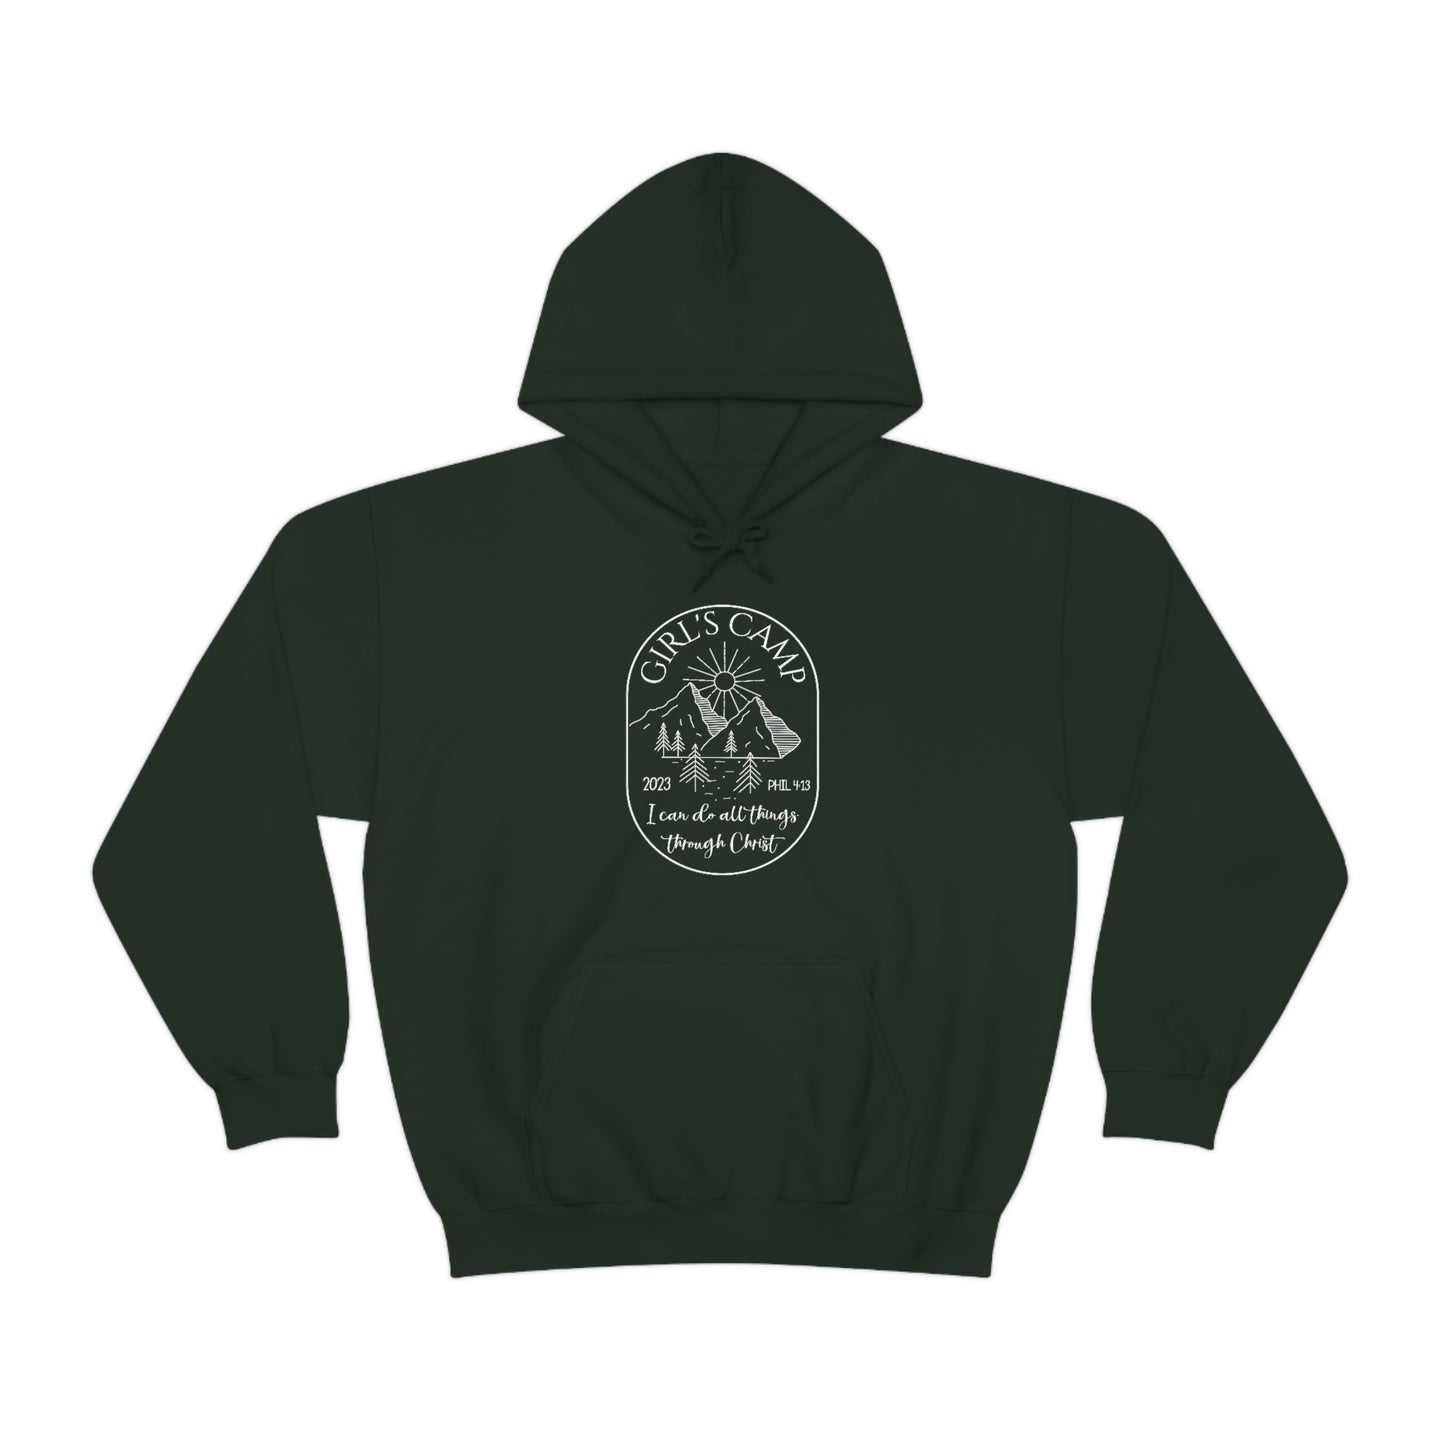 Unisex Heavy Blend Hooded Sweatshirt, Girl's Camp Hoodie